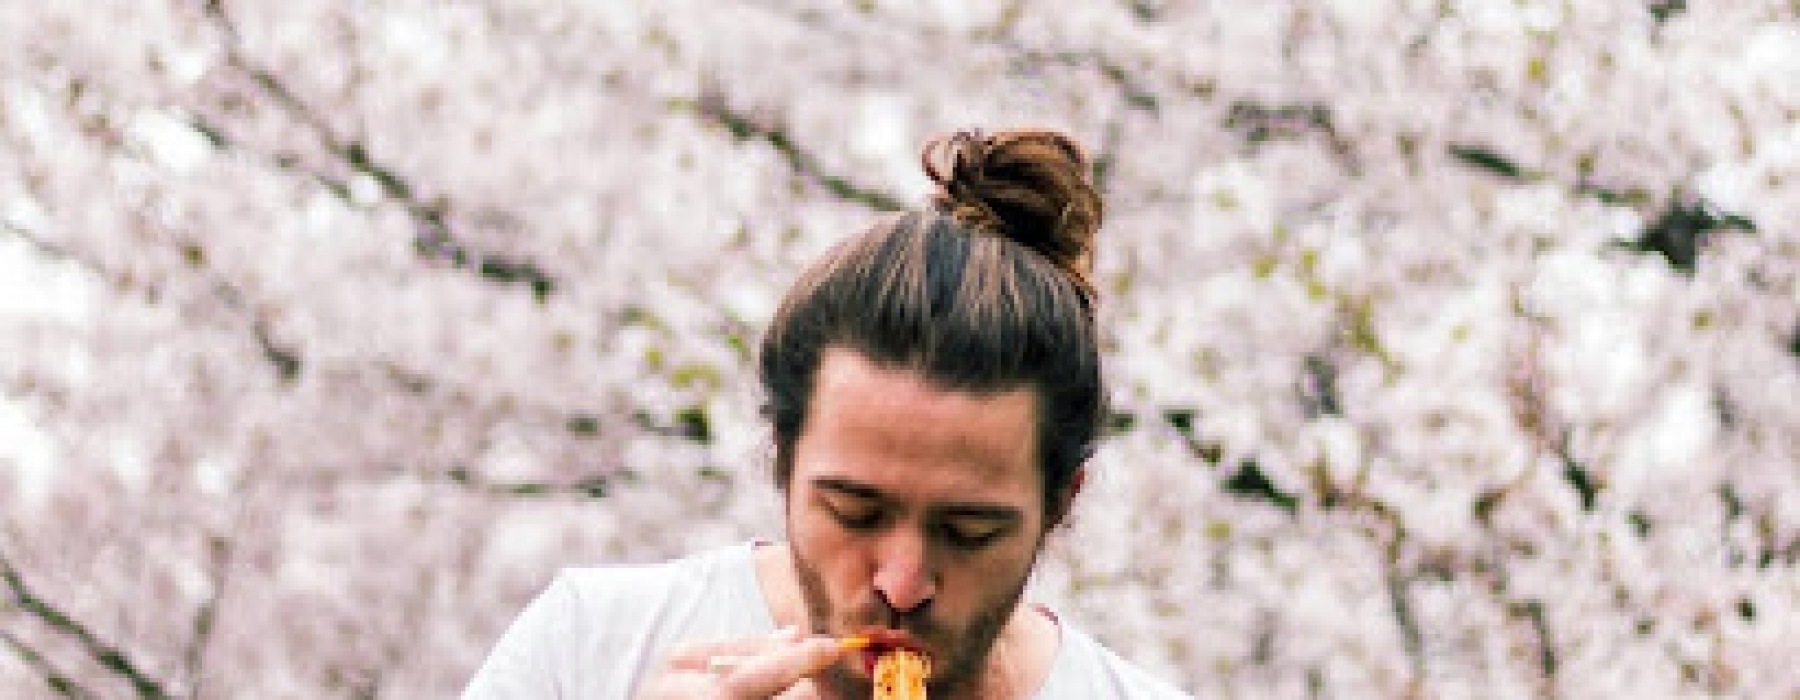 Man eating ramen 